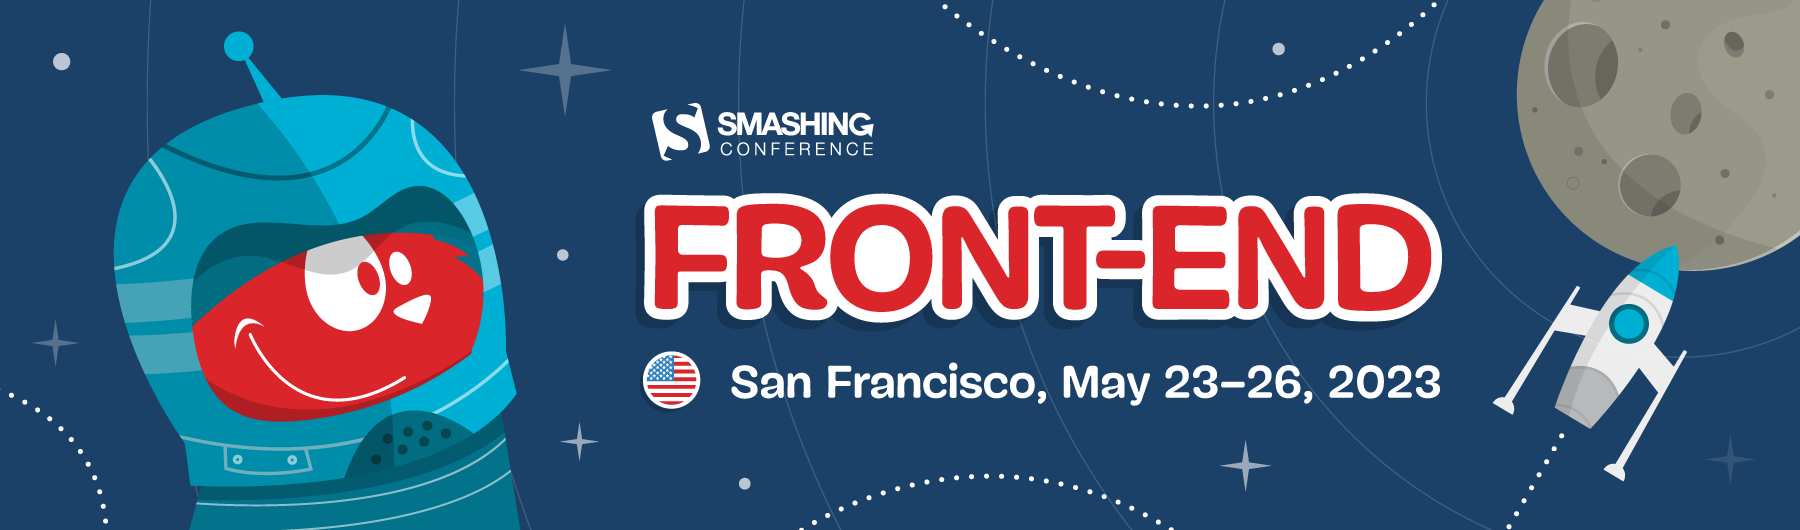 Smashing San Francisco advertisement banner, May 23-26, 2023